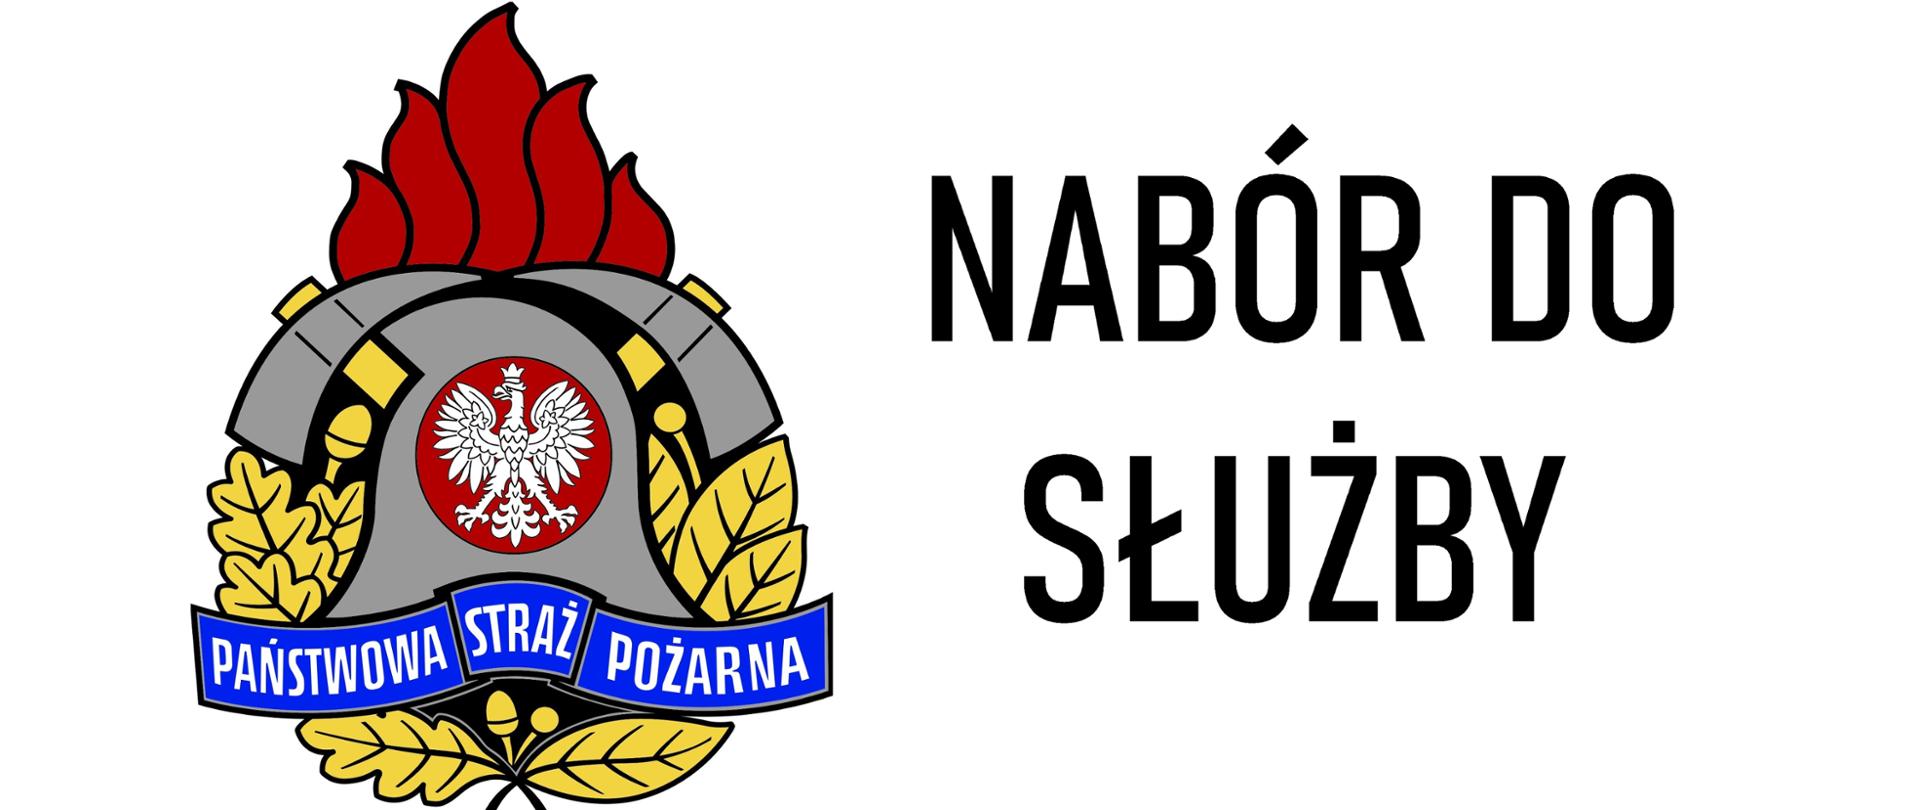 Zdjęcie przedstawia logo PSP wraz z napisem Nabór do służby